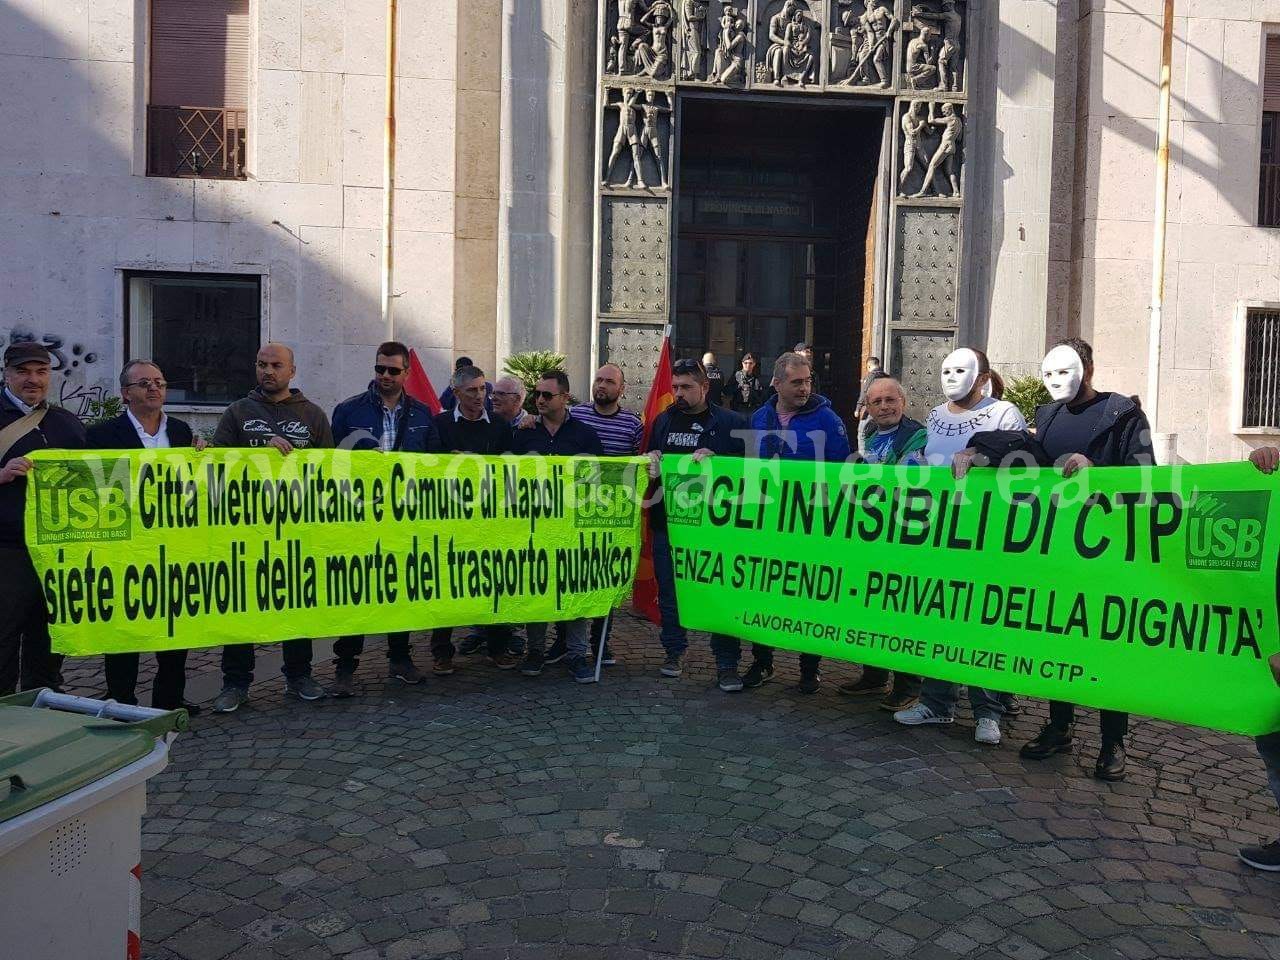 TRASPORTI/ “Gli invisibili Ctp”: continua la protesta dei lavoratori